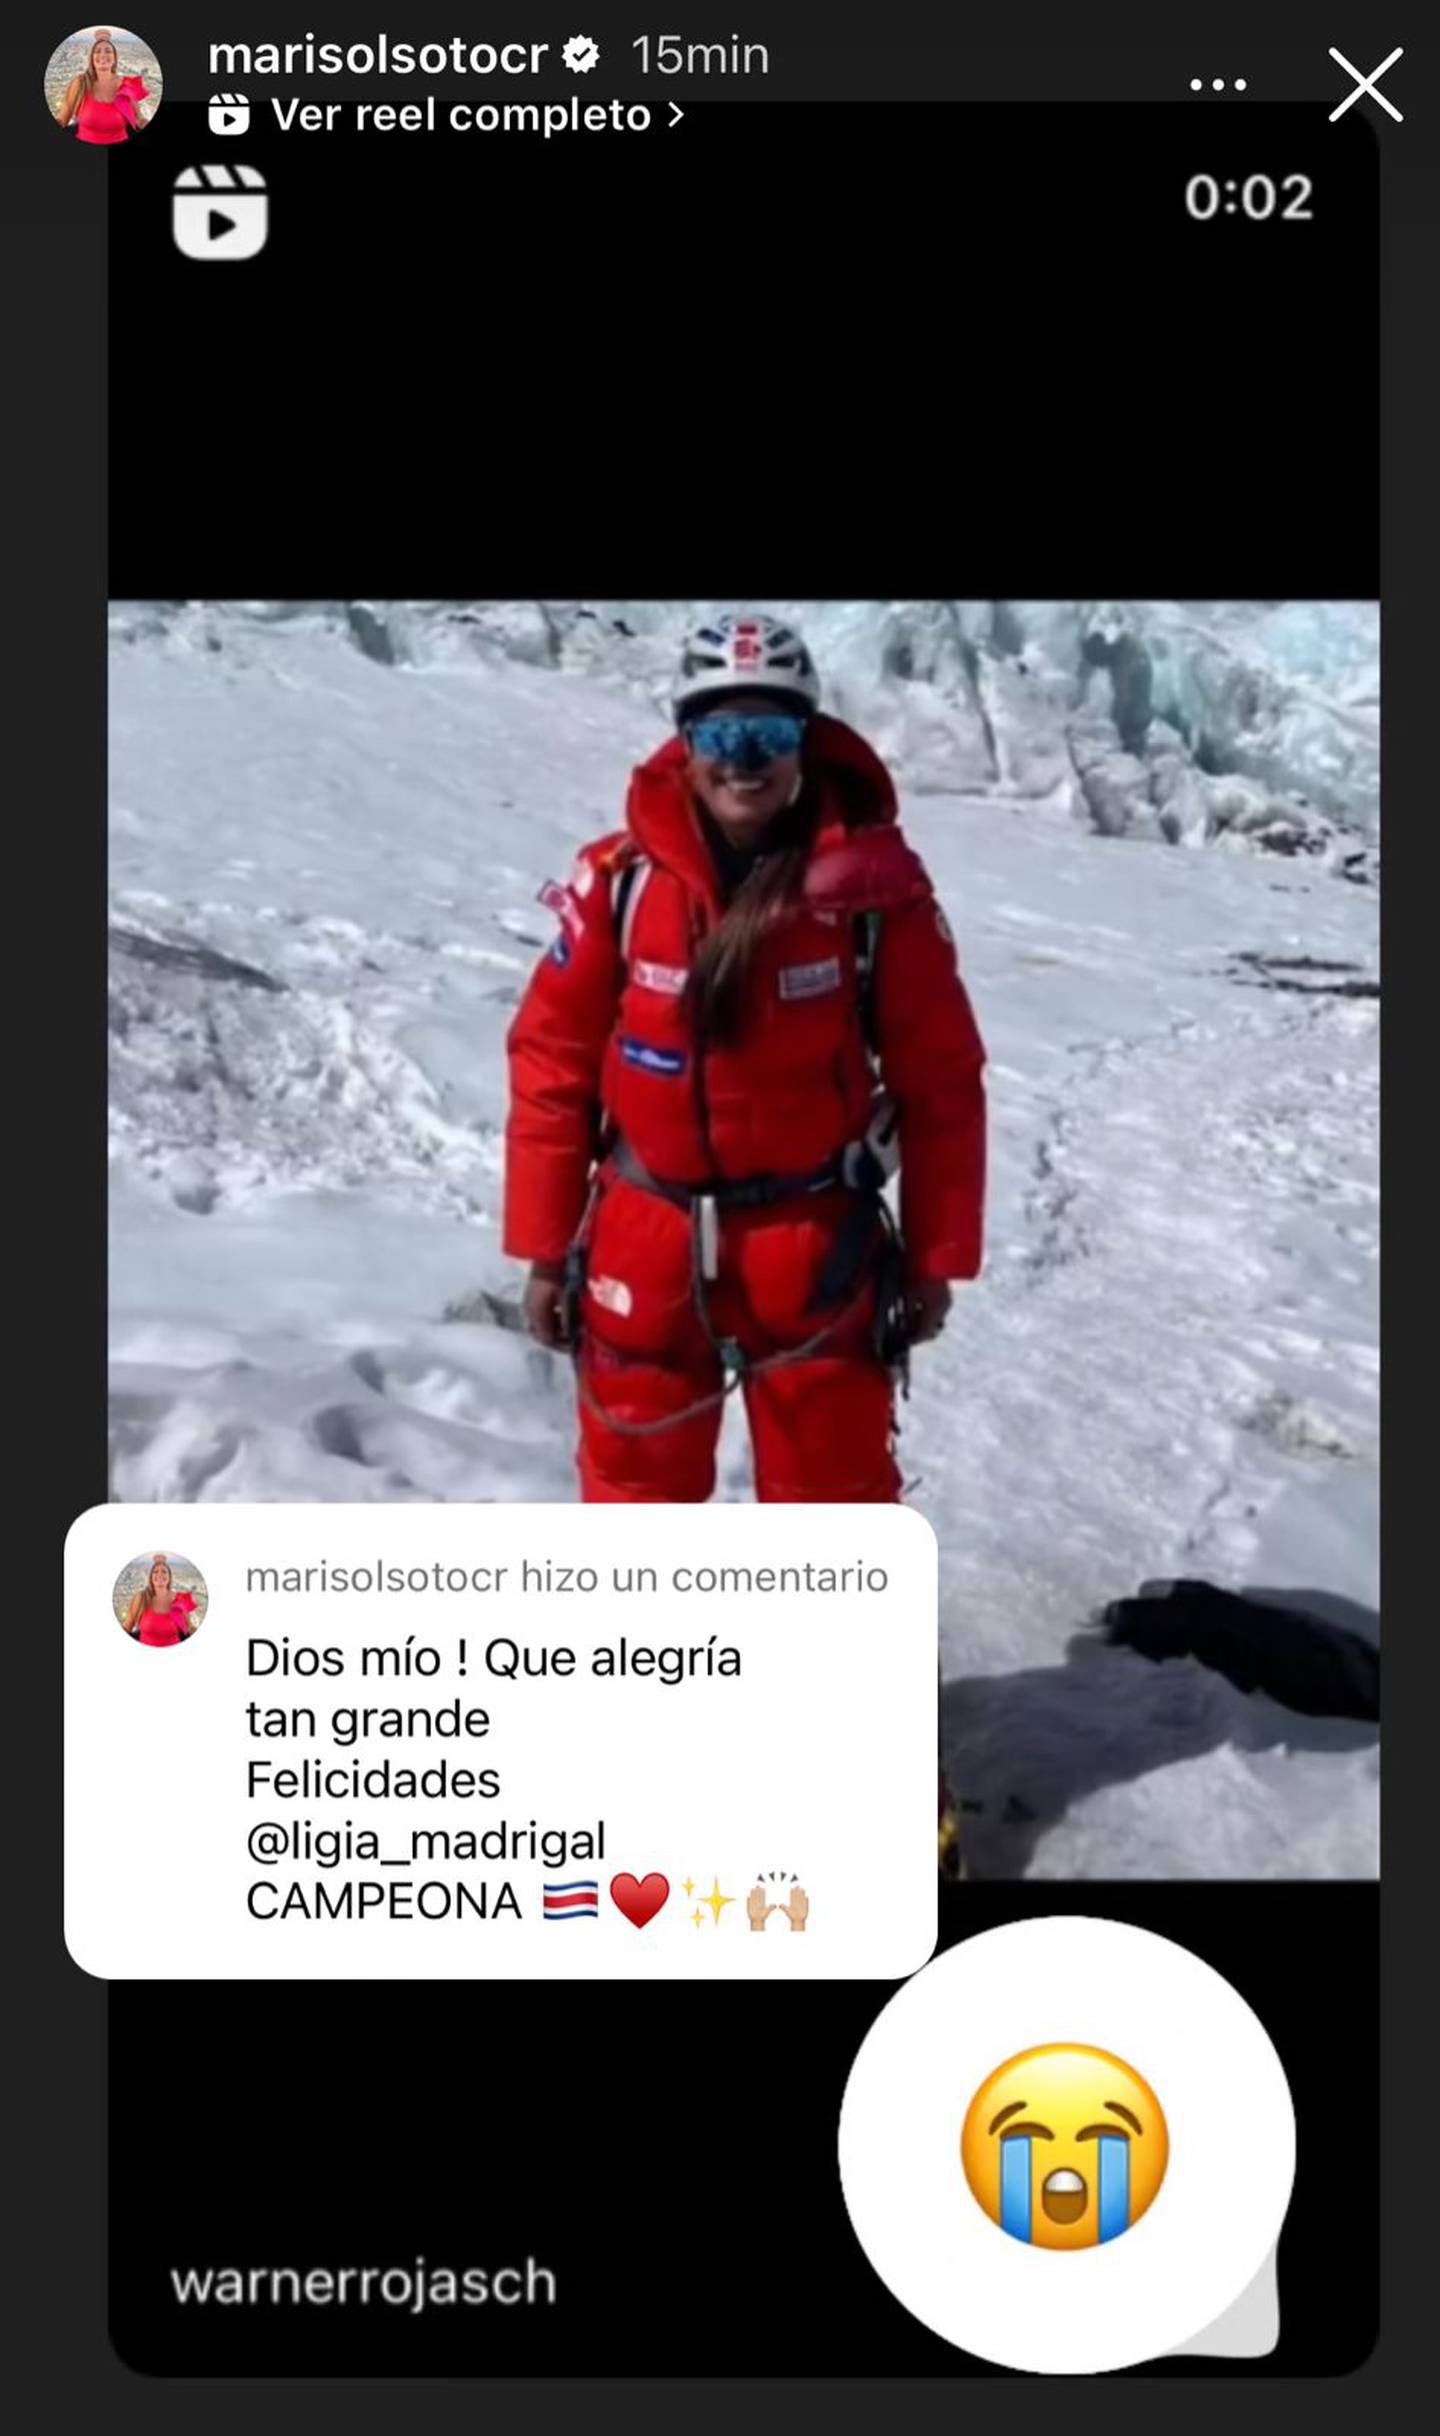 Con emojis de lágrimas y corazones, las figuras han reaccionado con alegría sobre la llegada de Ligia Madrigal al Everest. En la fotografía, una historia compartida por Marisol Soto.